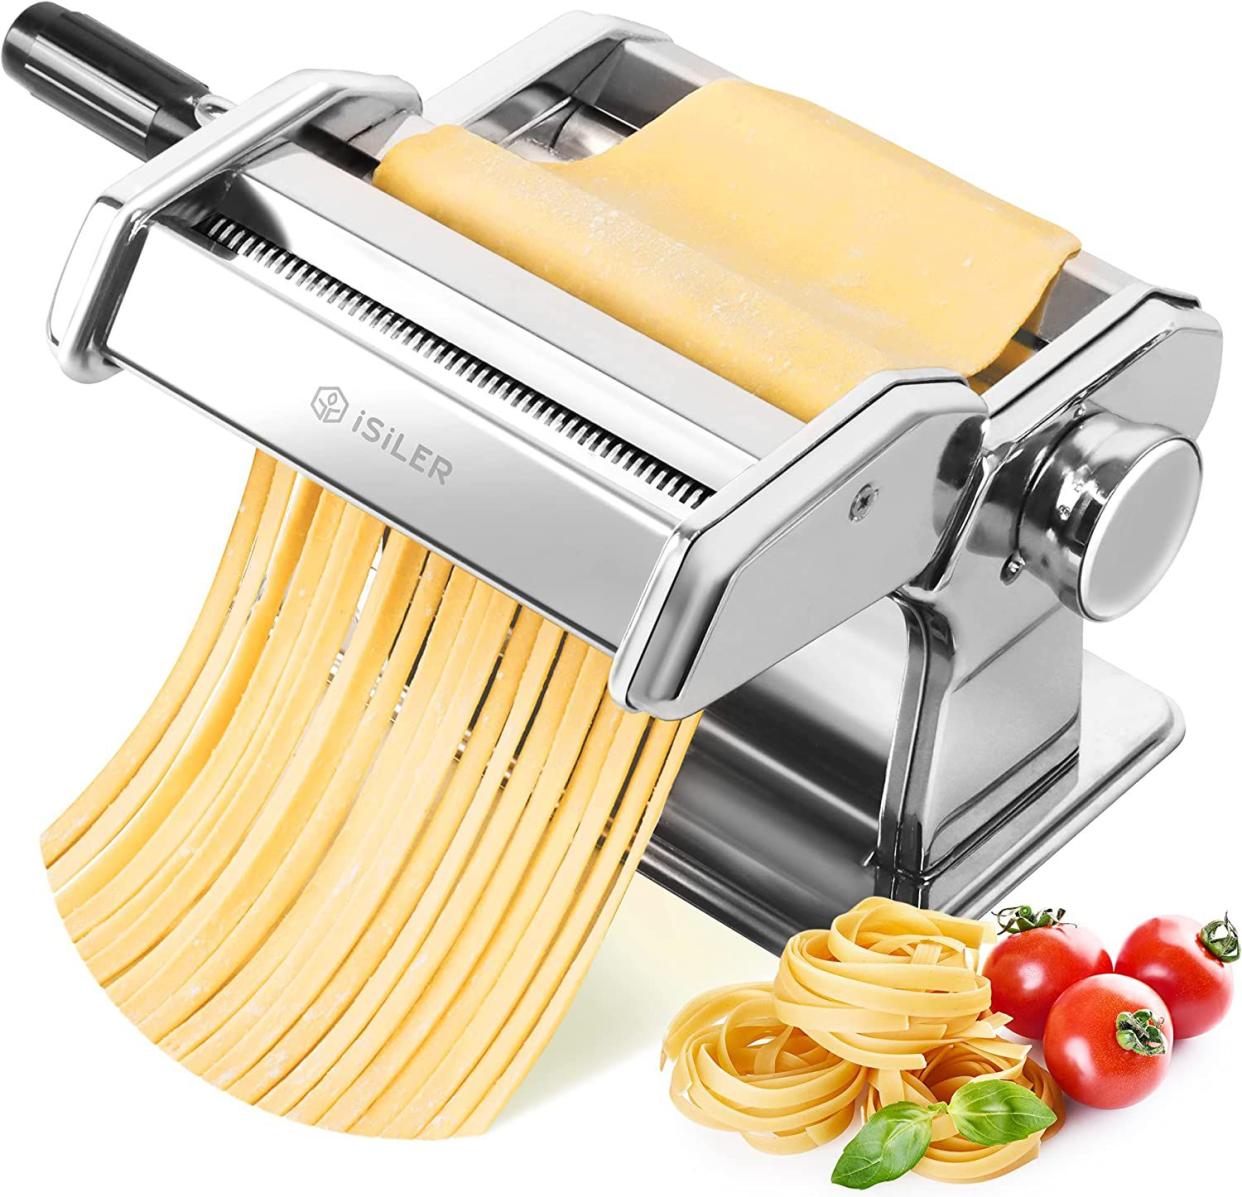 ISILER 150 Roller Pasta Maker B07HB2KL4C